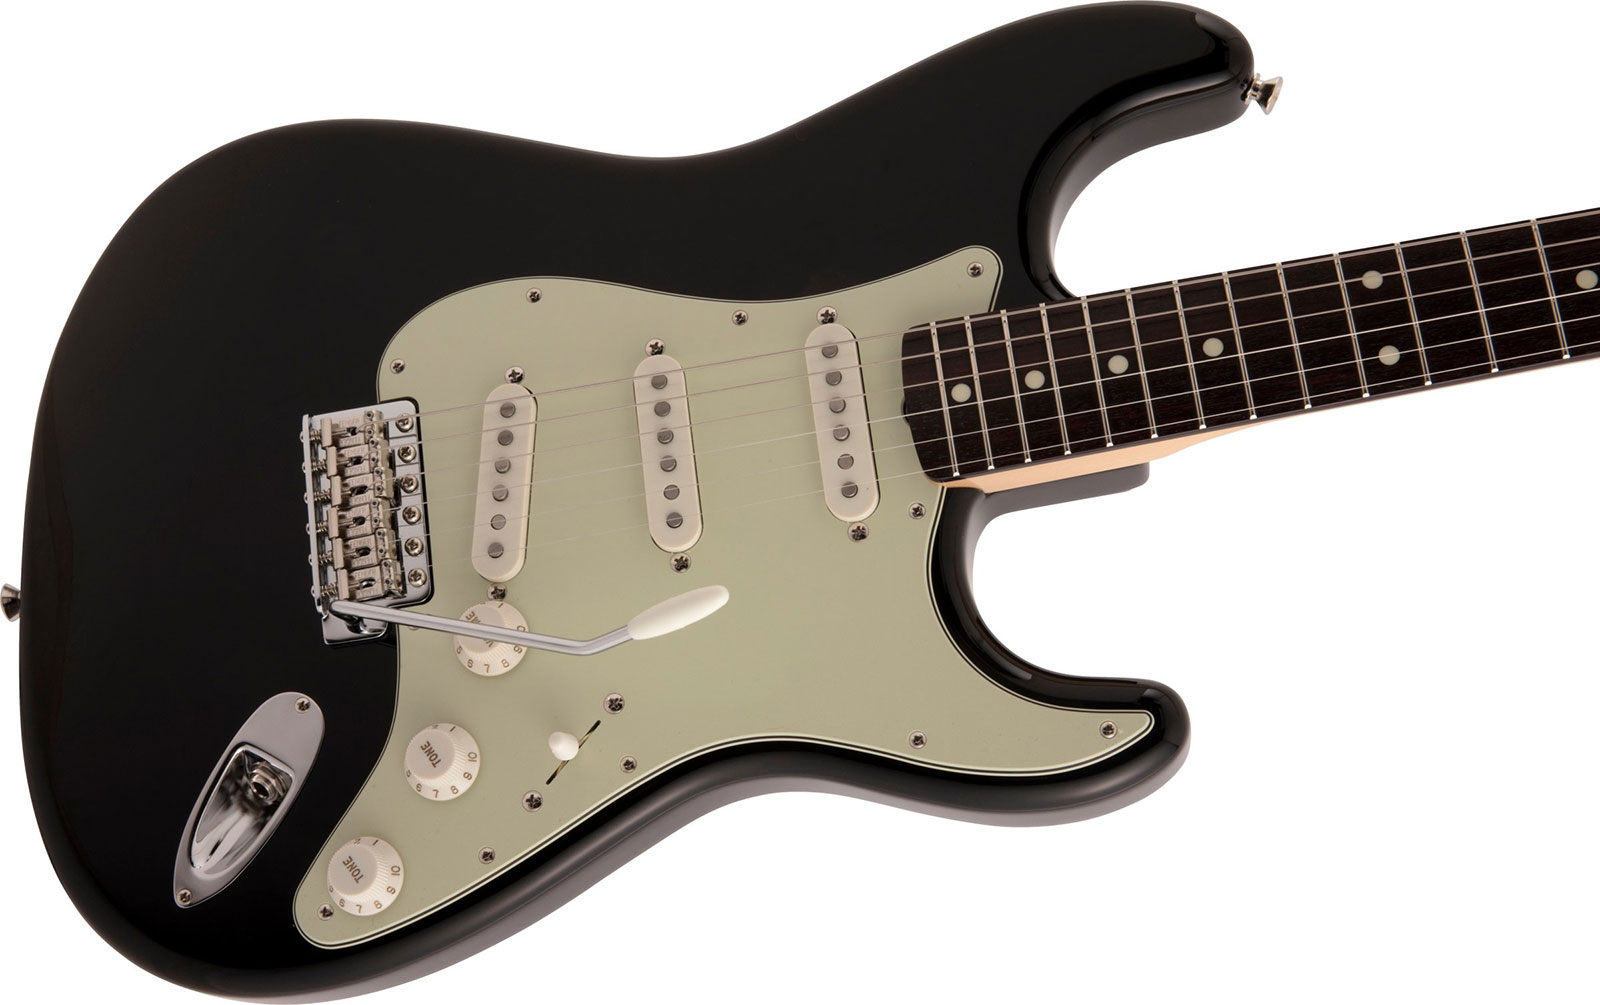 Fender Strat Traditional Ii 60s Mij Jap 3s Trem Rw - Black - E-Gitarre in Str-Form - Variation 2